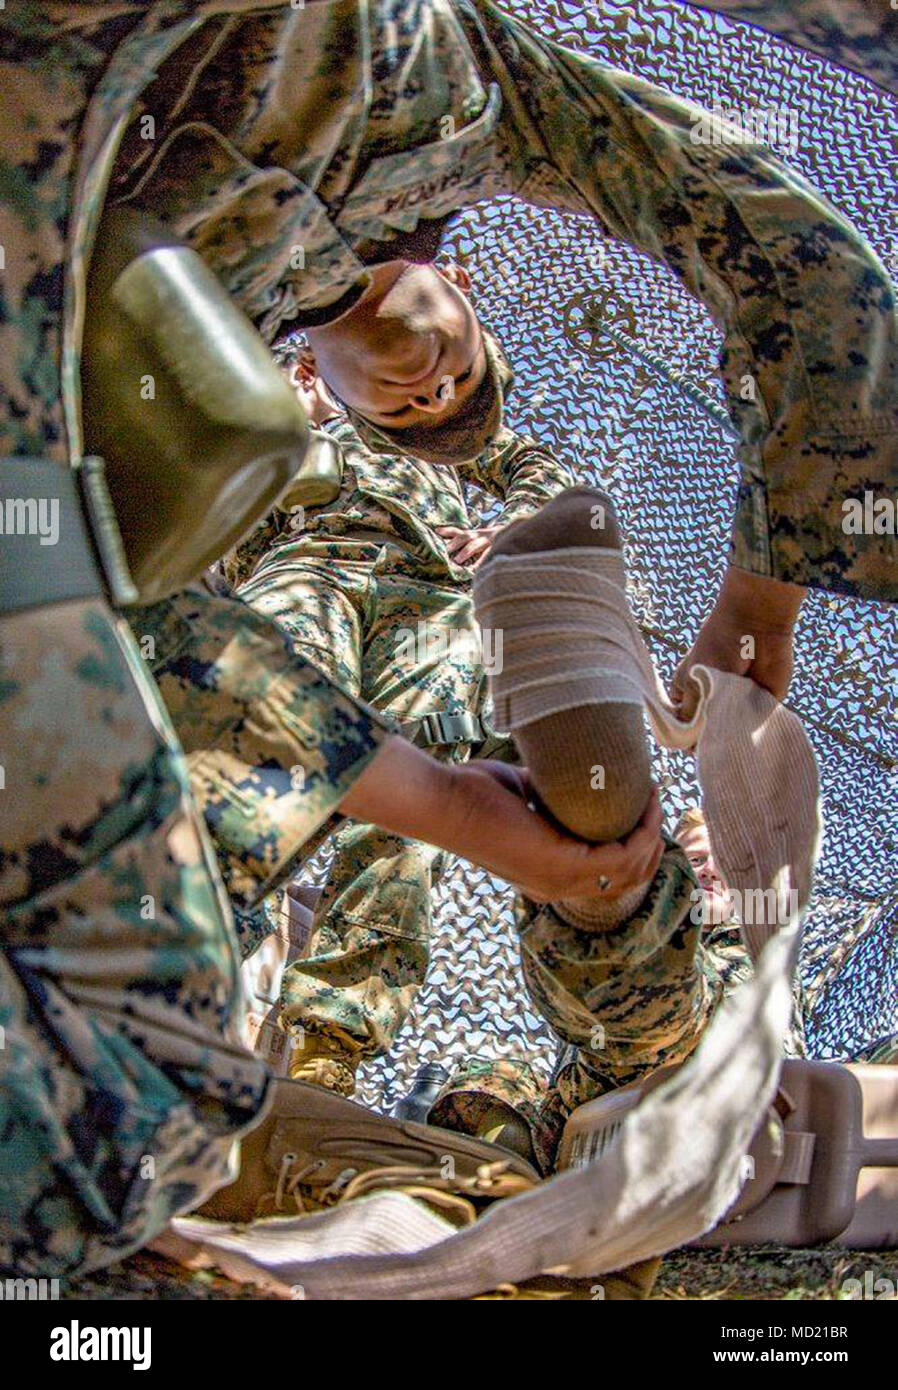 MARINE CORPS BASE CAMP PENDLETON, en Californie - Le Sgt. Angel Garcia, un spécialiste des données avec la 11e Marine Expeditionary Unit, enveloppements un ace bandage autour d'une simulation de l'entorse de la cheville au cours de la formation le 6 mars. Le terrain et la formation en classe exercice est d'assurer des Marines et marins sont habiles à la bataille de test des compétences nécessaires à leurs fonctions et de favoriser l'esprit de corps. (U.S. Marine Corps photo par le Cpl. Jacob A. programme Farbo) Banque D'Images